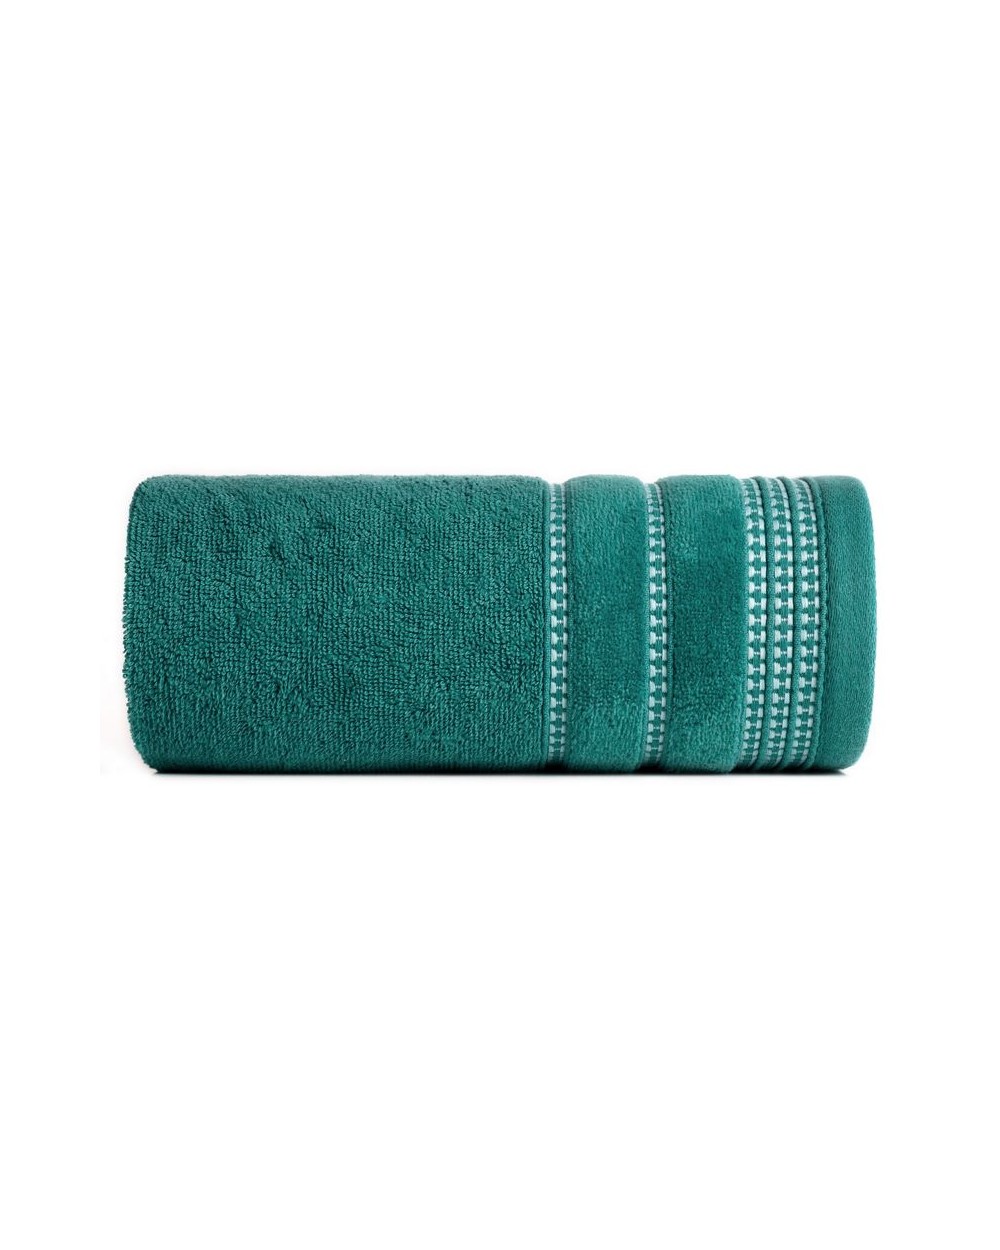 Ręcznik bawełna 70x140 Amanda ciemnoturkusowy